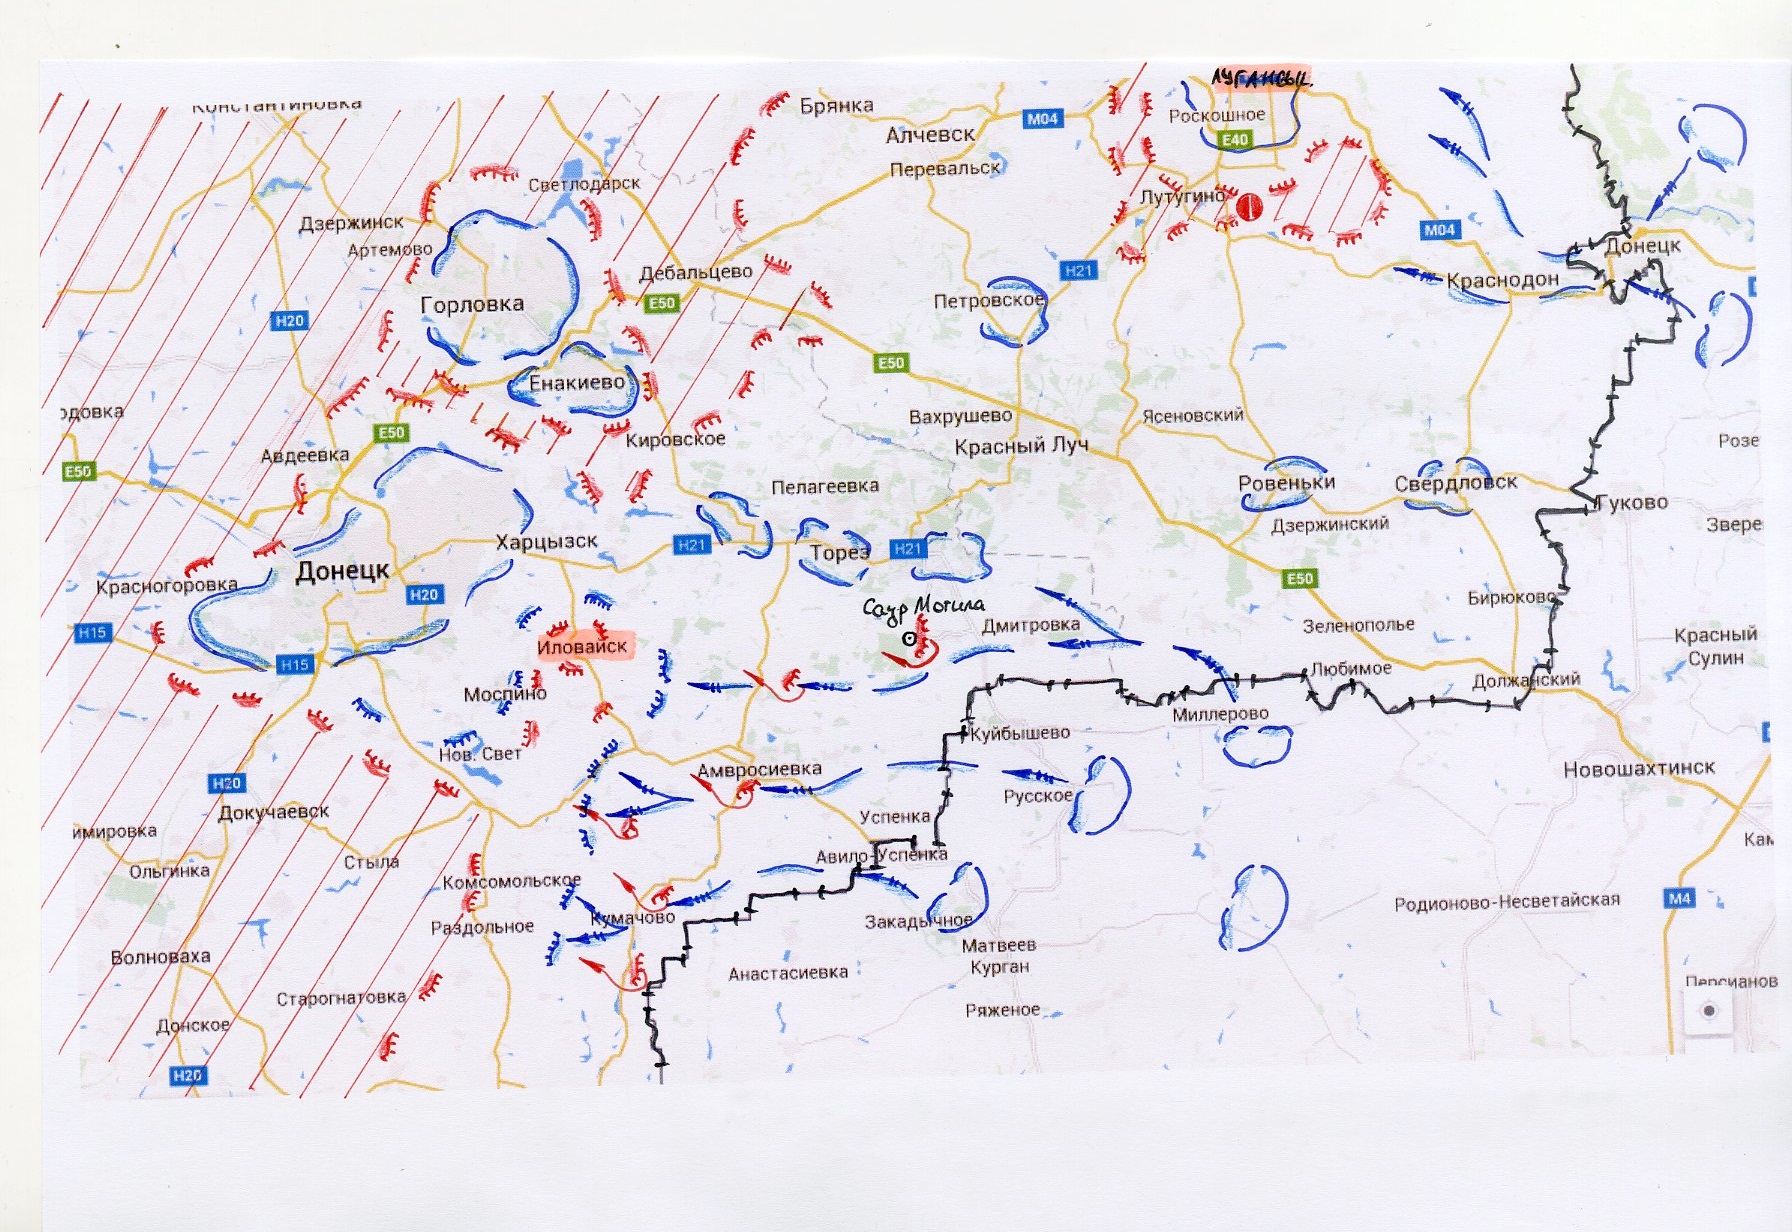 Аналіз ведення АТО та наслідків вторгнення Росії в Україну у серпні-вересні 2014 року - фото 4